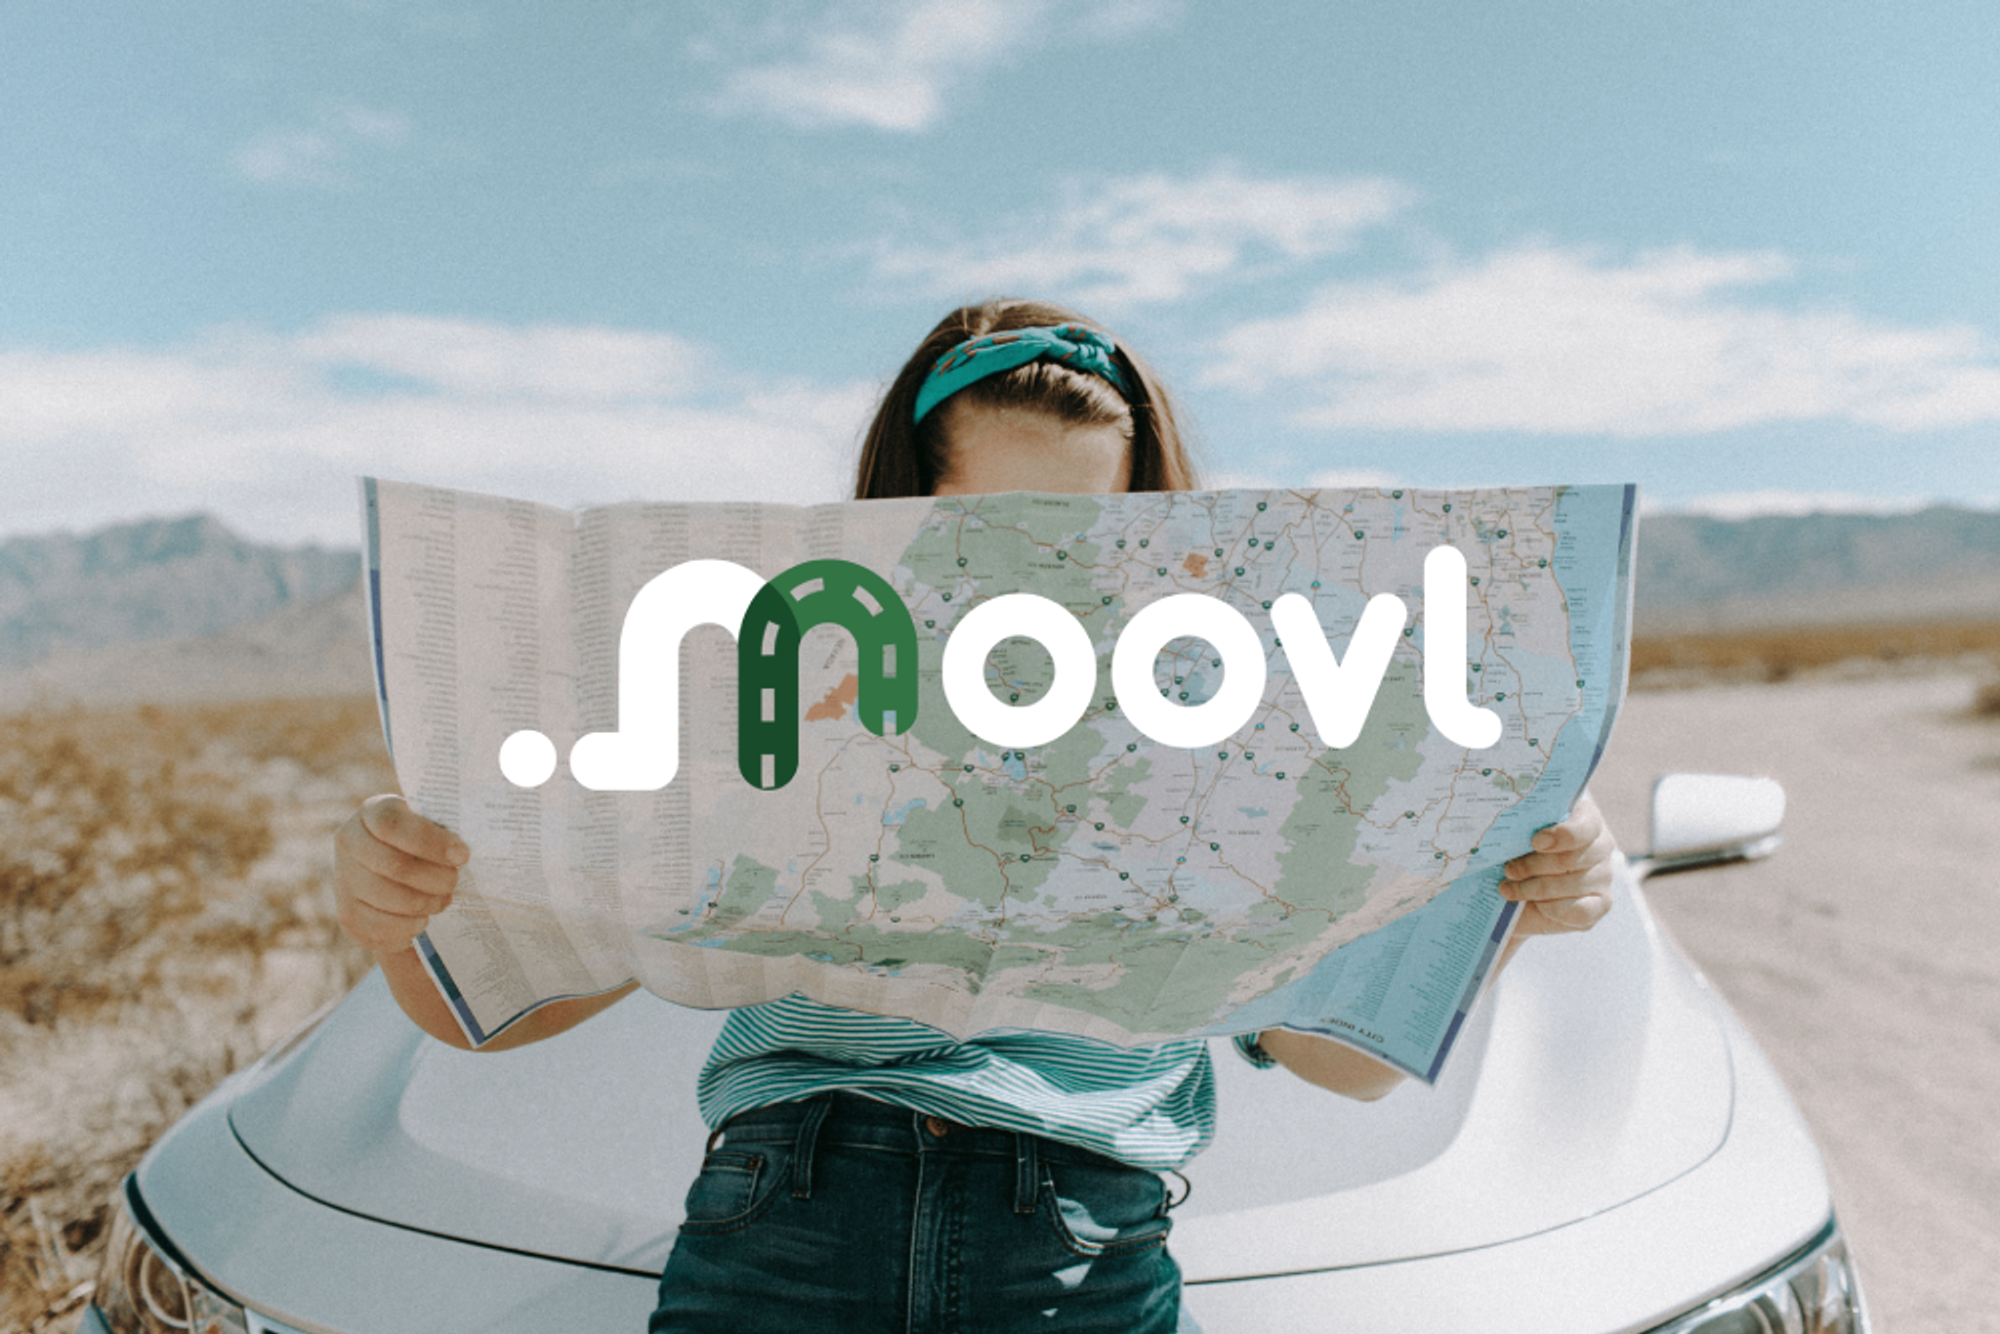 Sydney NSW to Byron Bay NSW : Travel by carpool | Moovl